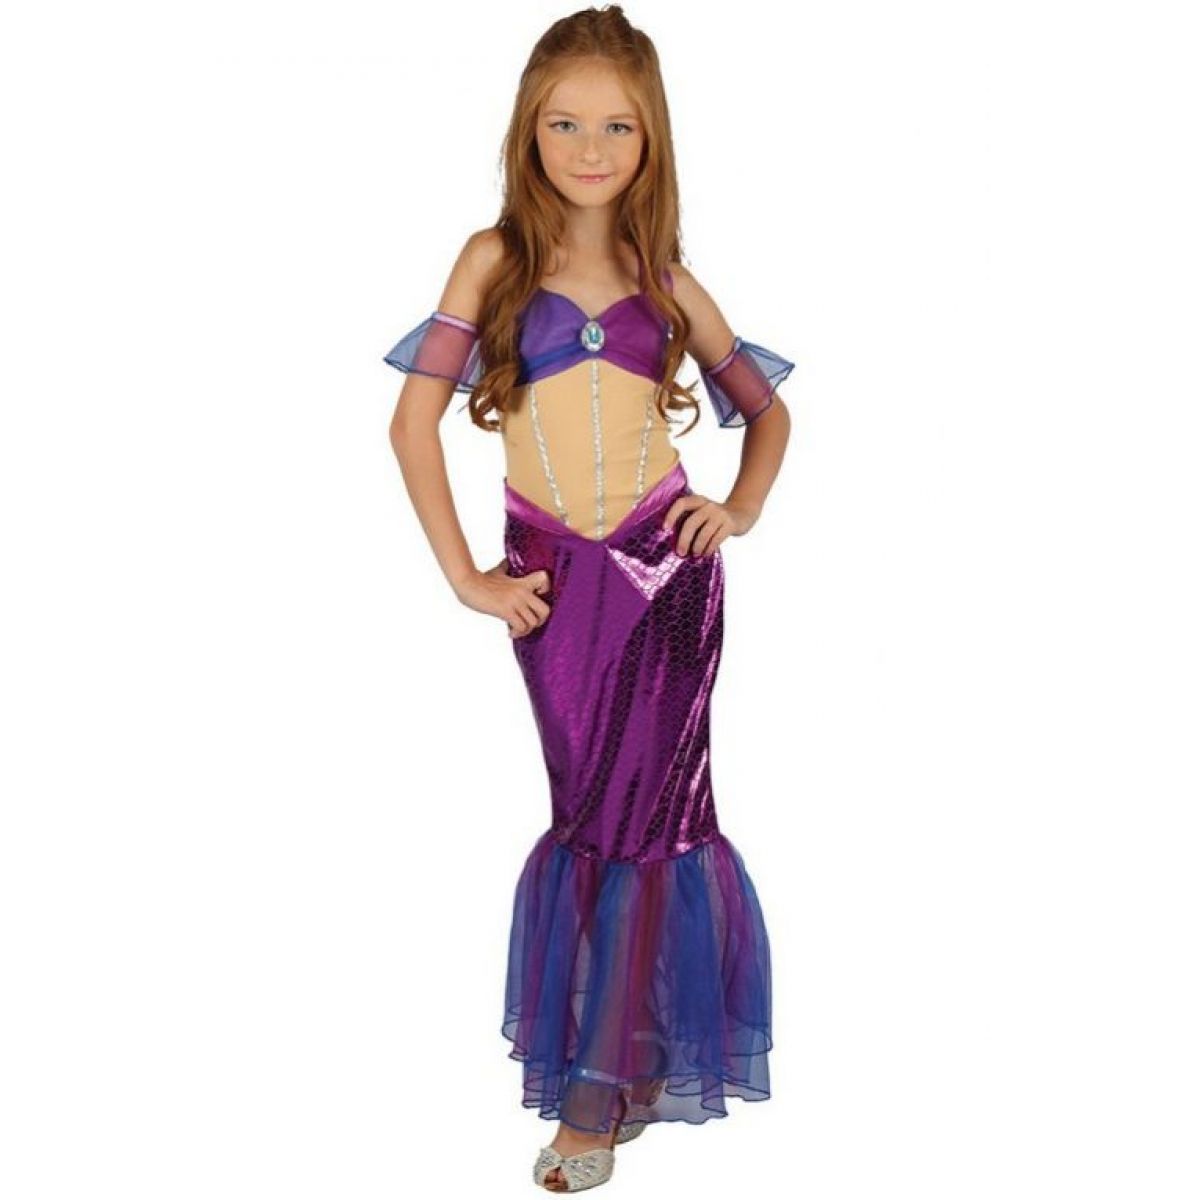 Made Detský kostým Morská panna fialová 120-130cm - Poškodený obal